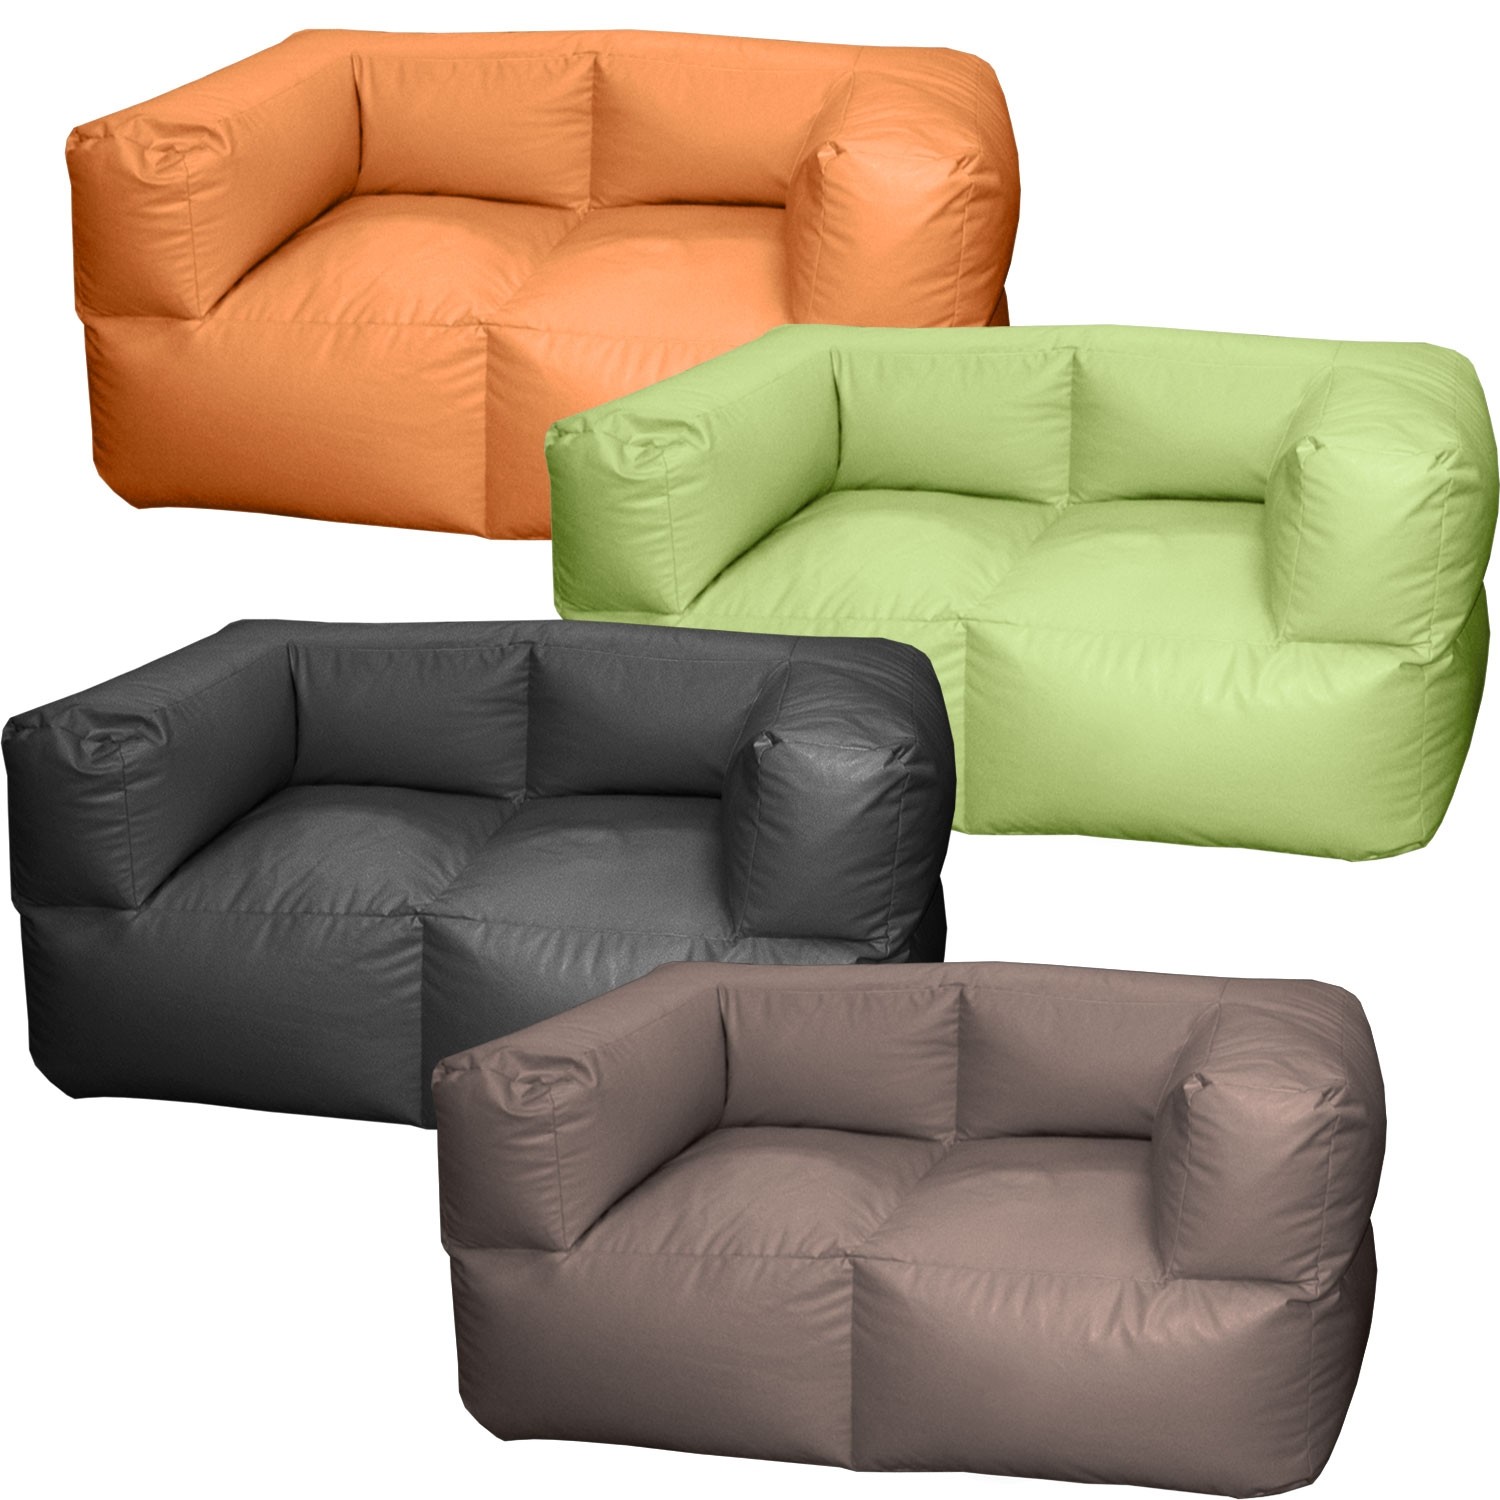 Διθέσιος καναπές πουφ Fantasy με Δερματίνη μονόχρωμος σε 20 χρώματα